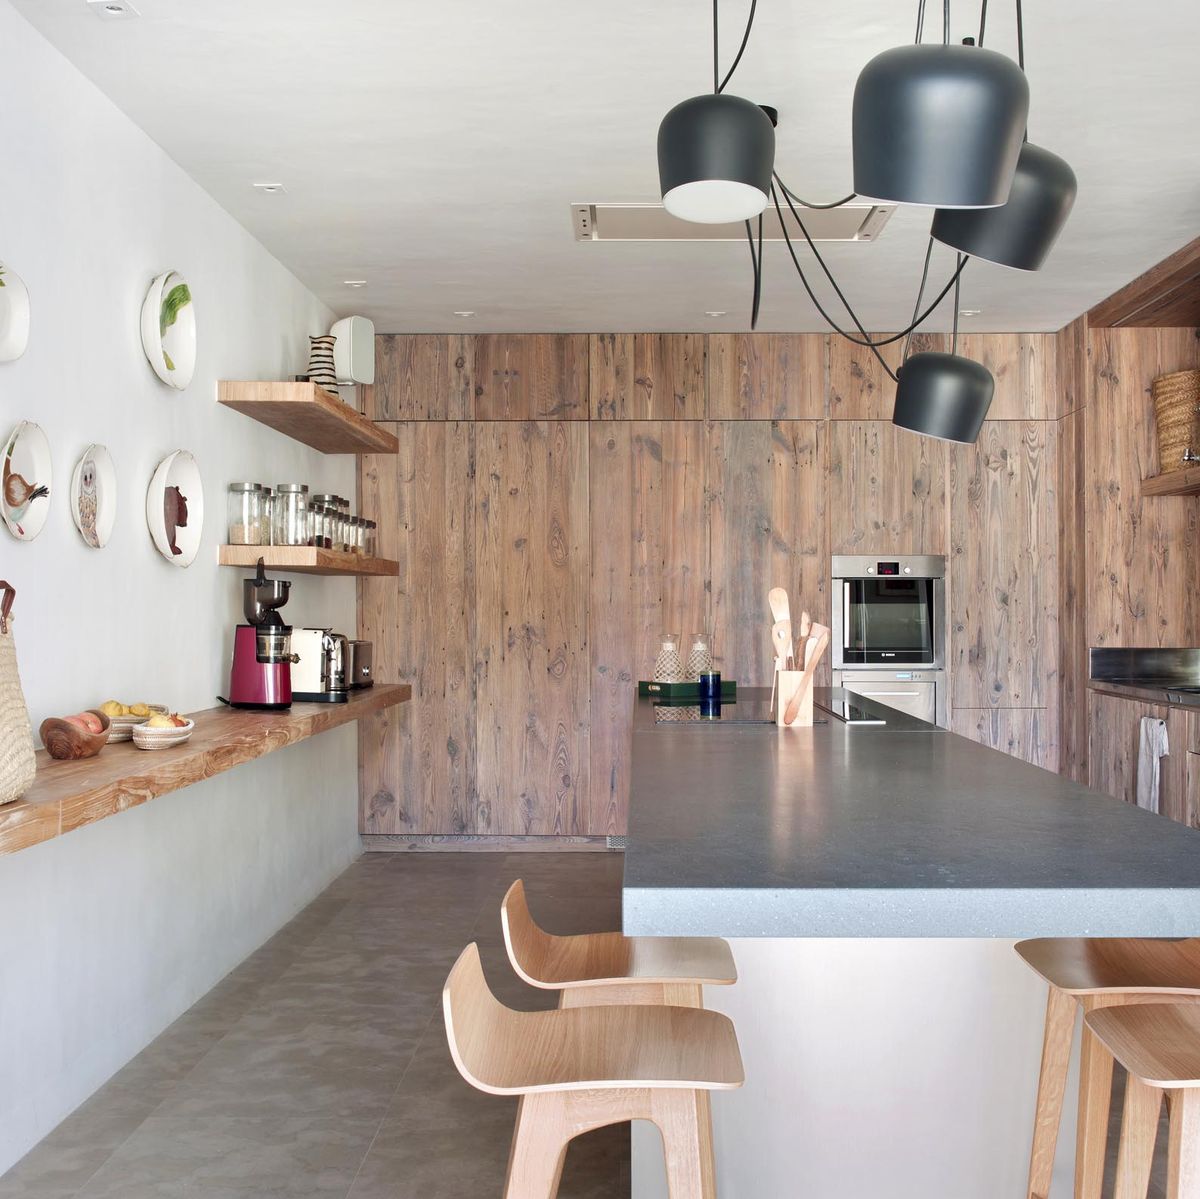 Mueble de cocina con persiana Muebles de cocina de segunda mano